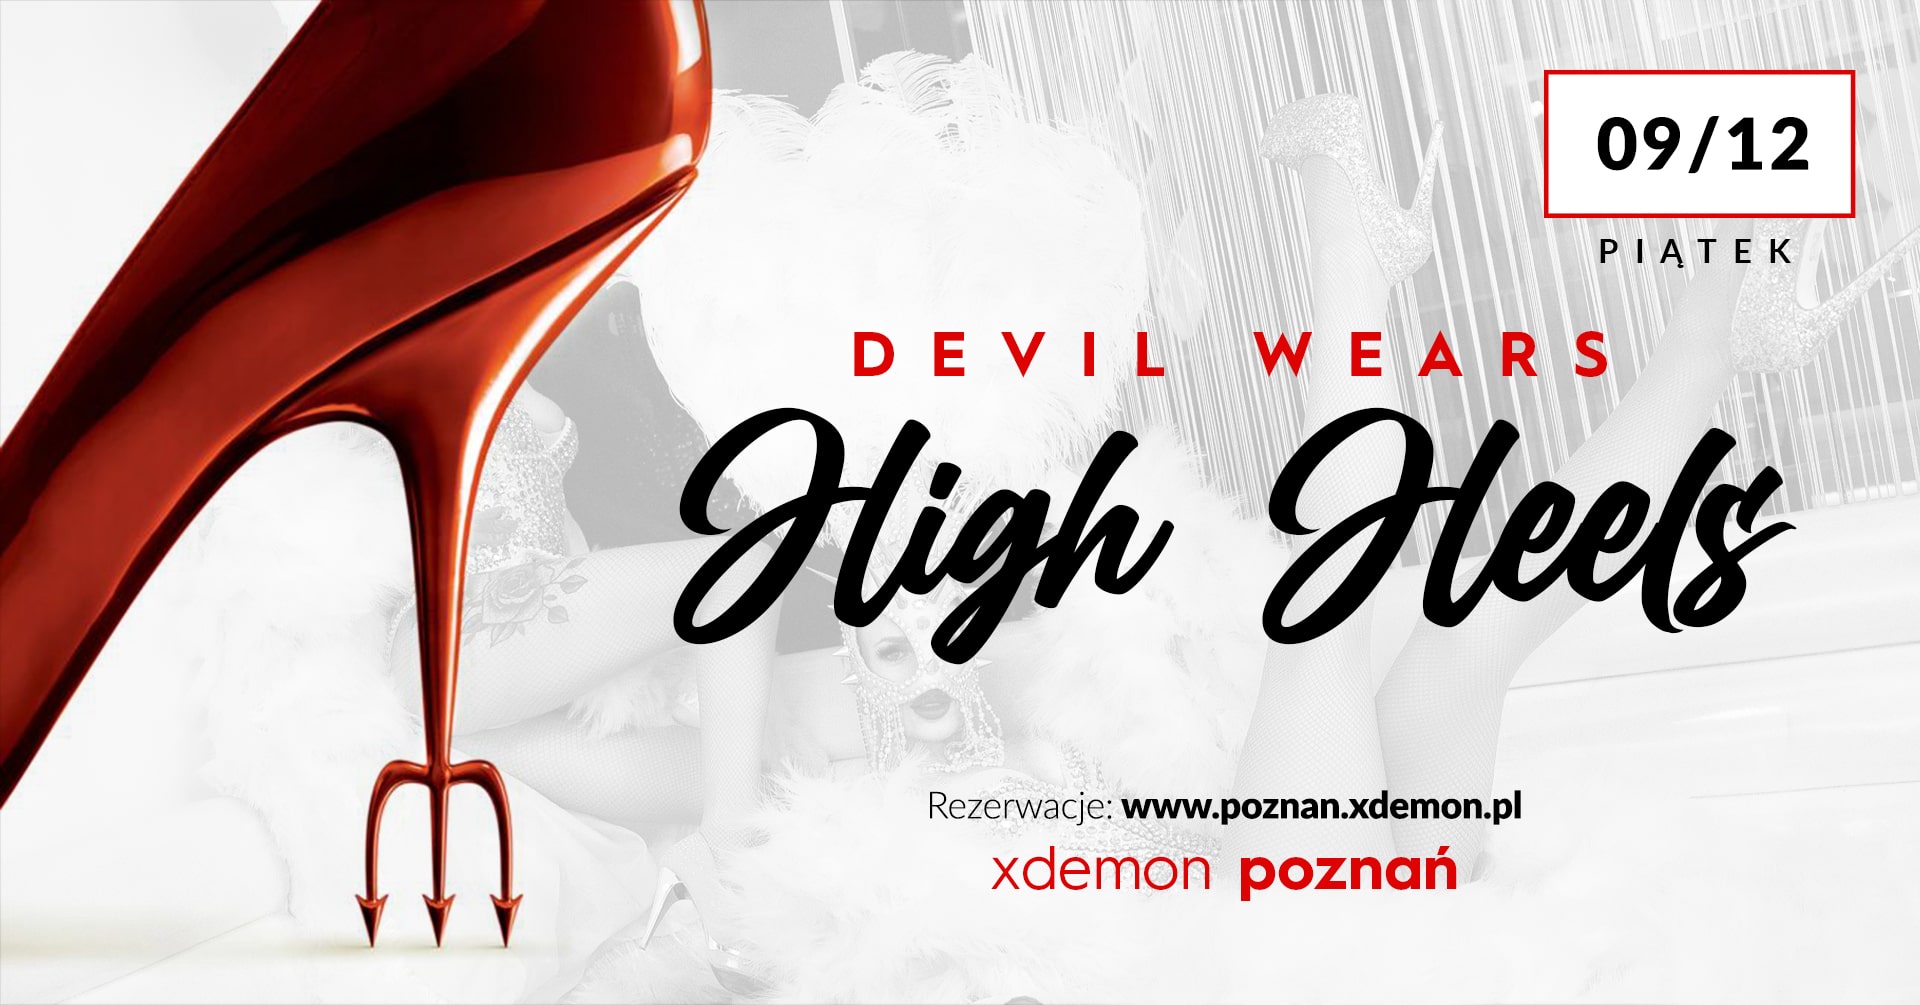 Devil wears High Heels